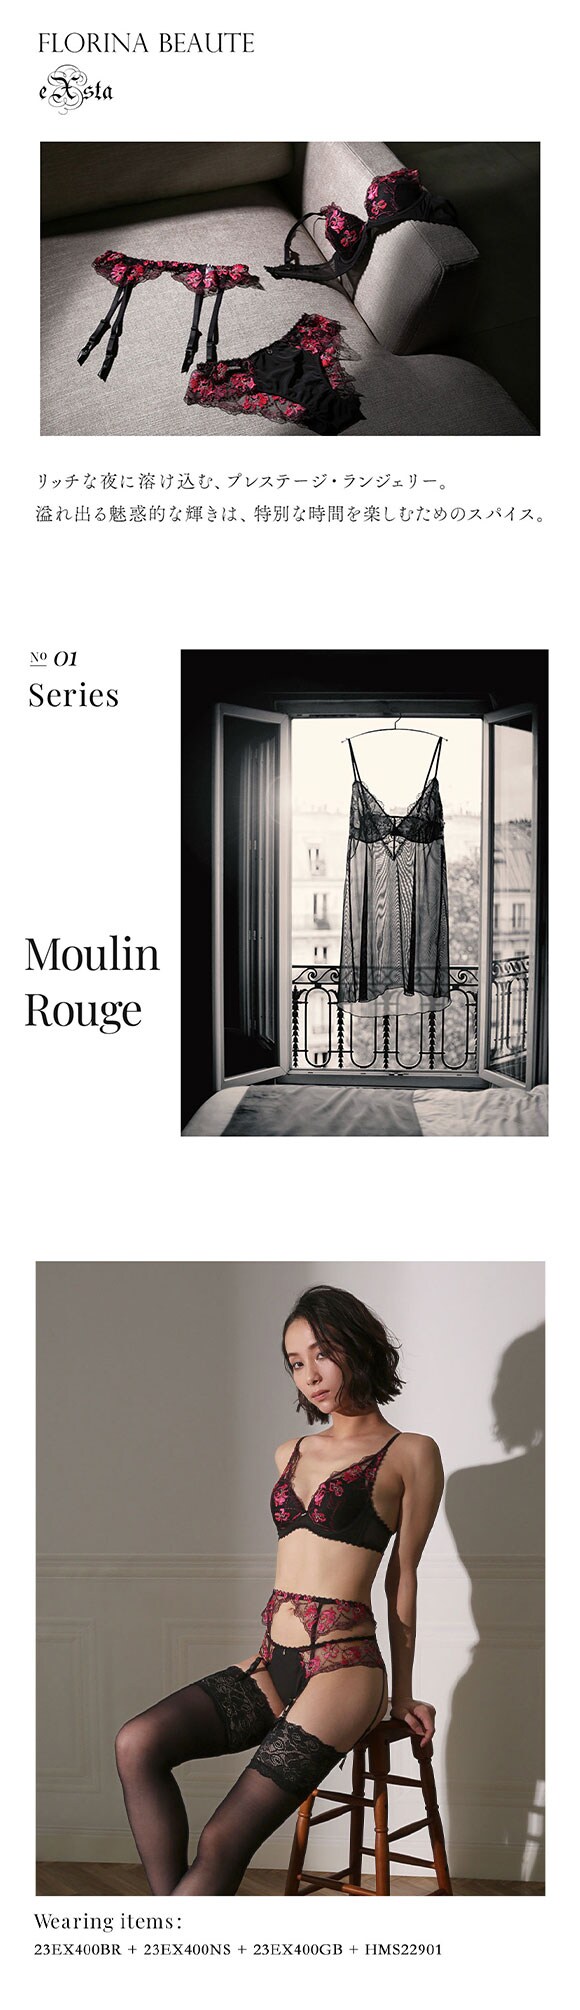 フロリナヴォーテ Moulin Rouge ブラジャー モールドカップ BCDEF 単品 FLORINA BEAUTE eXsta ムランルージュ